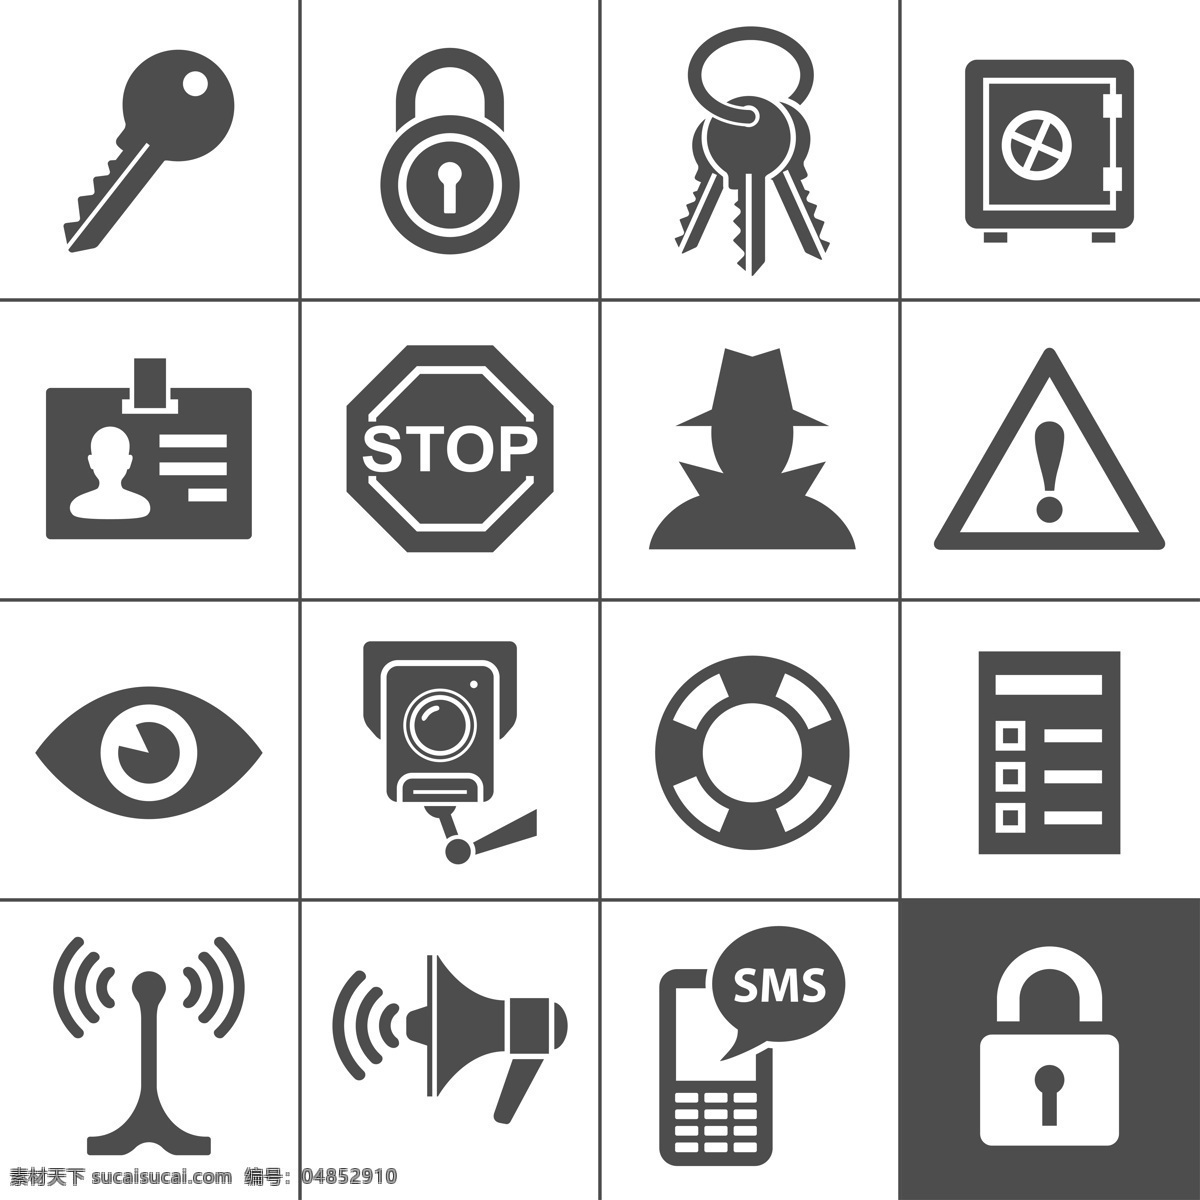 网络安全 图标 按钮 网络安全图标 信息图标 手机 密保 密码 app图标 应用程序图标 按钮图标 通讯网络 现代科技